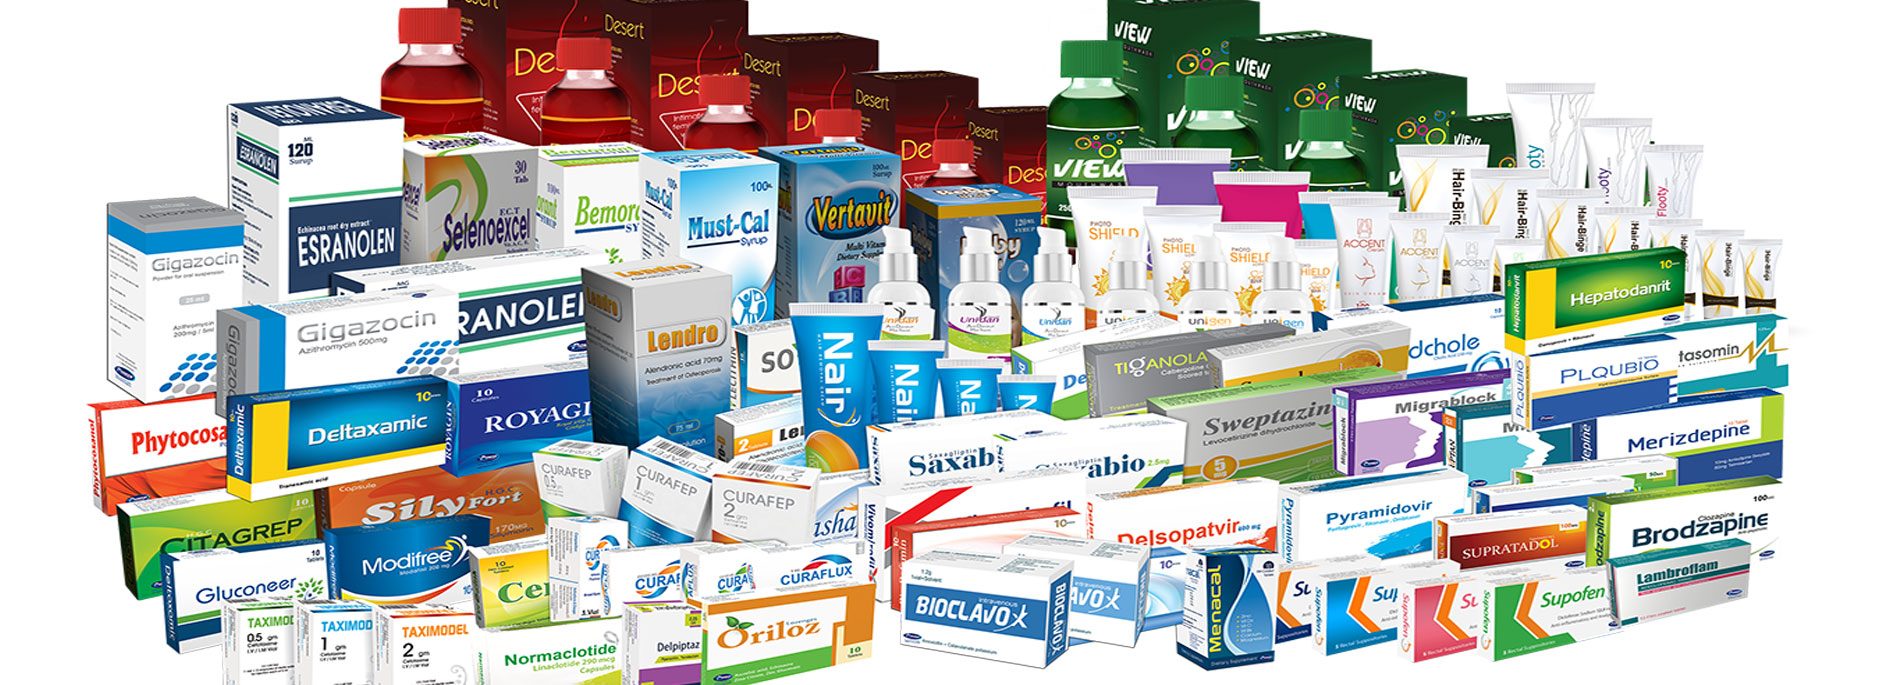 pioneer-pharma-products.jpg